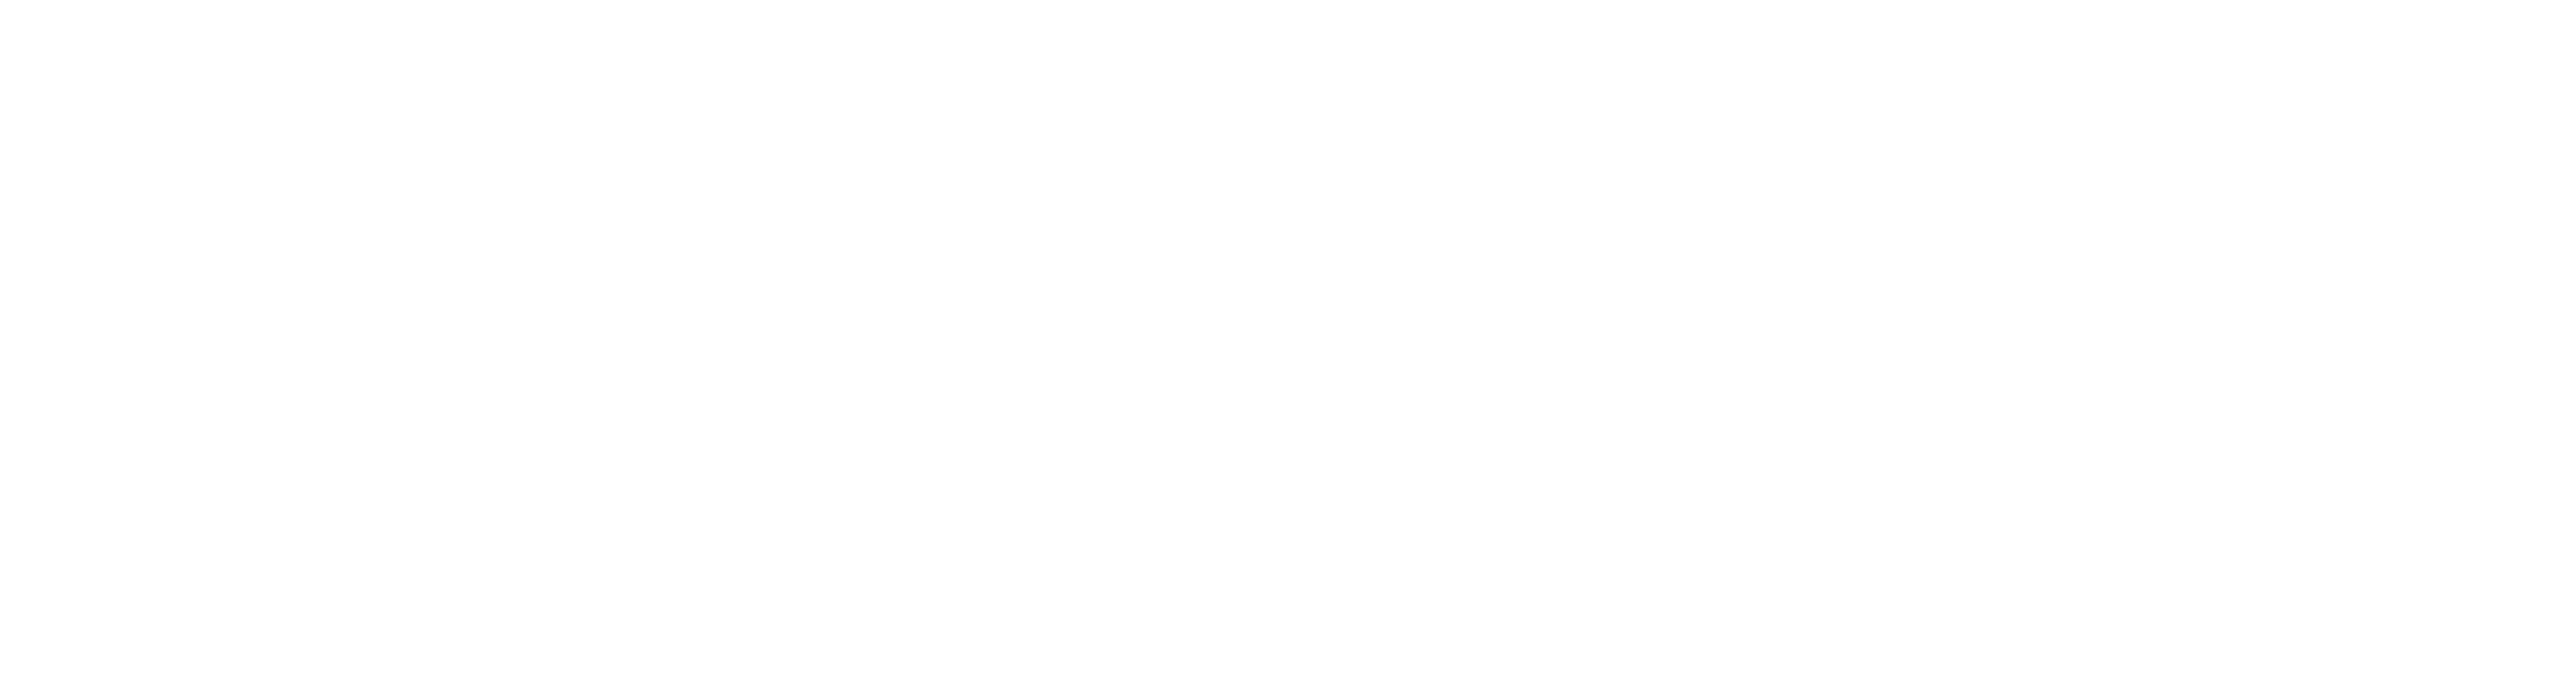 Chantier de l'emploi en construction de Montréal